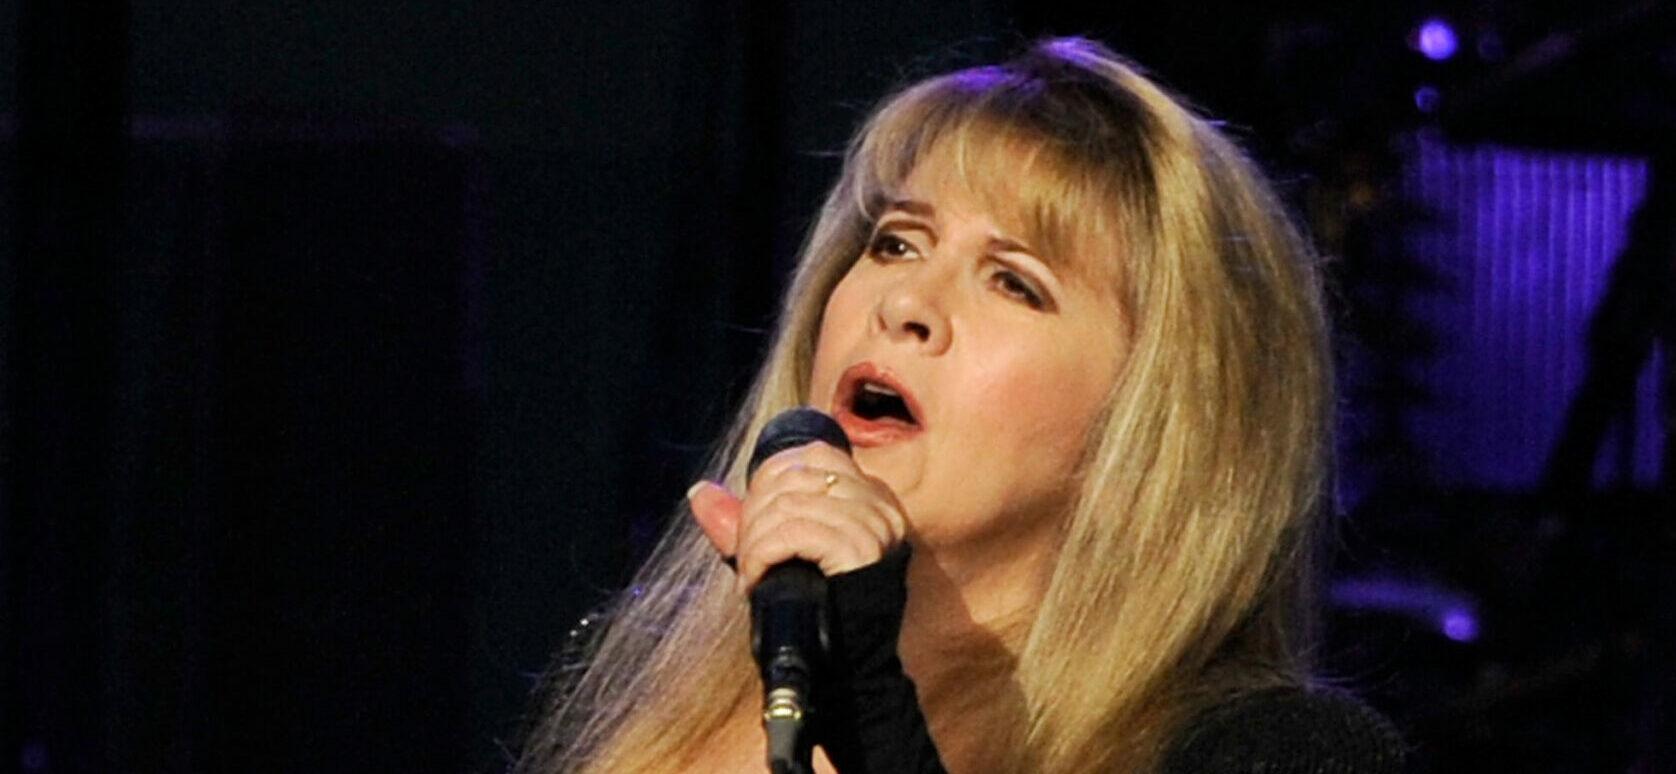 Stevie Nicks Performs A Poignant Tribute To Her Late Bandmate Christine McVie